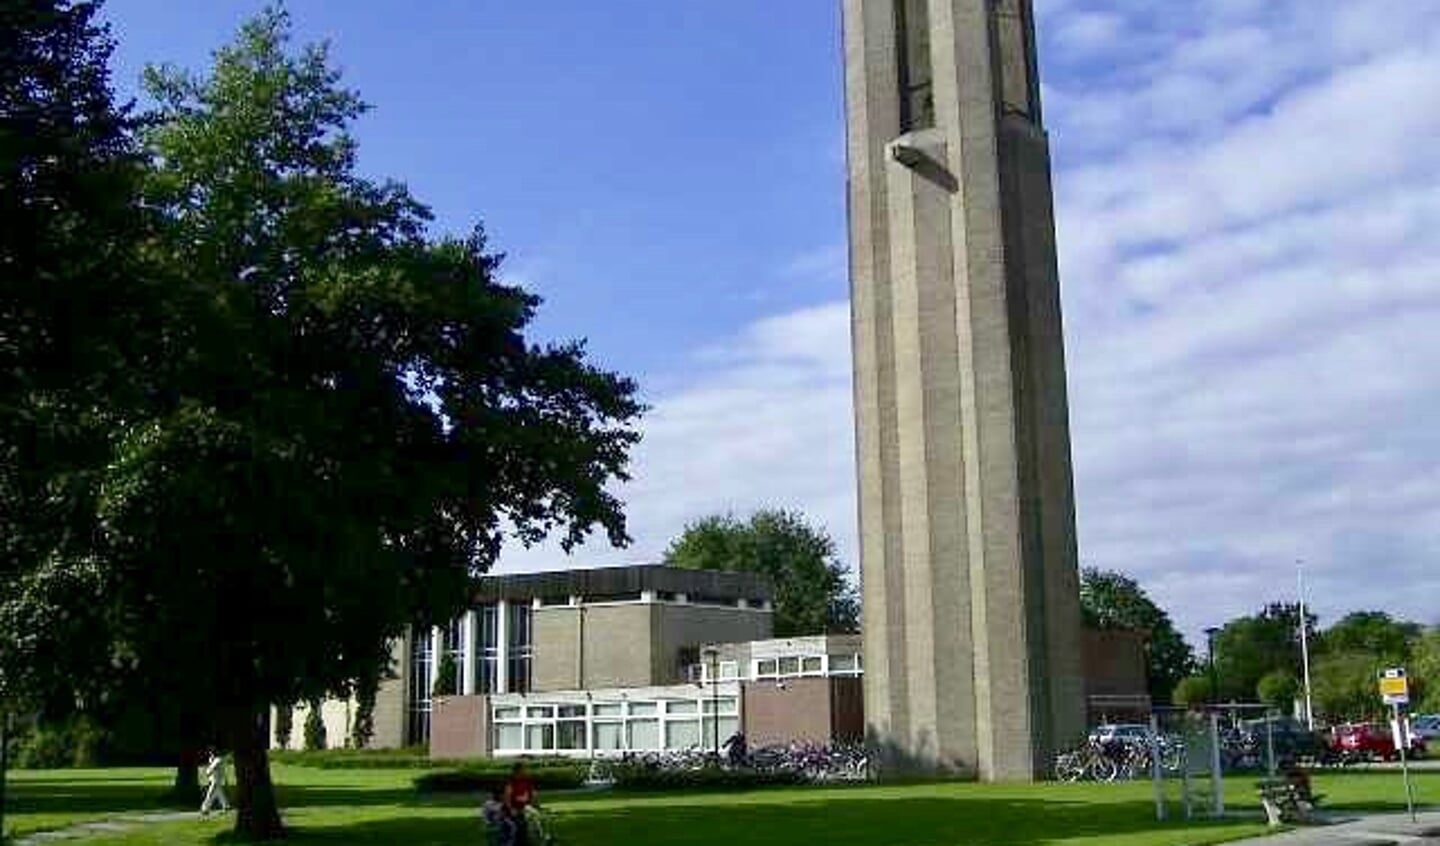 Kerkgebouw De Ark in Dronten.